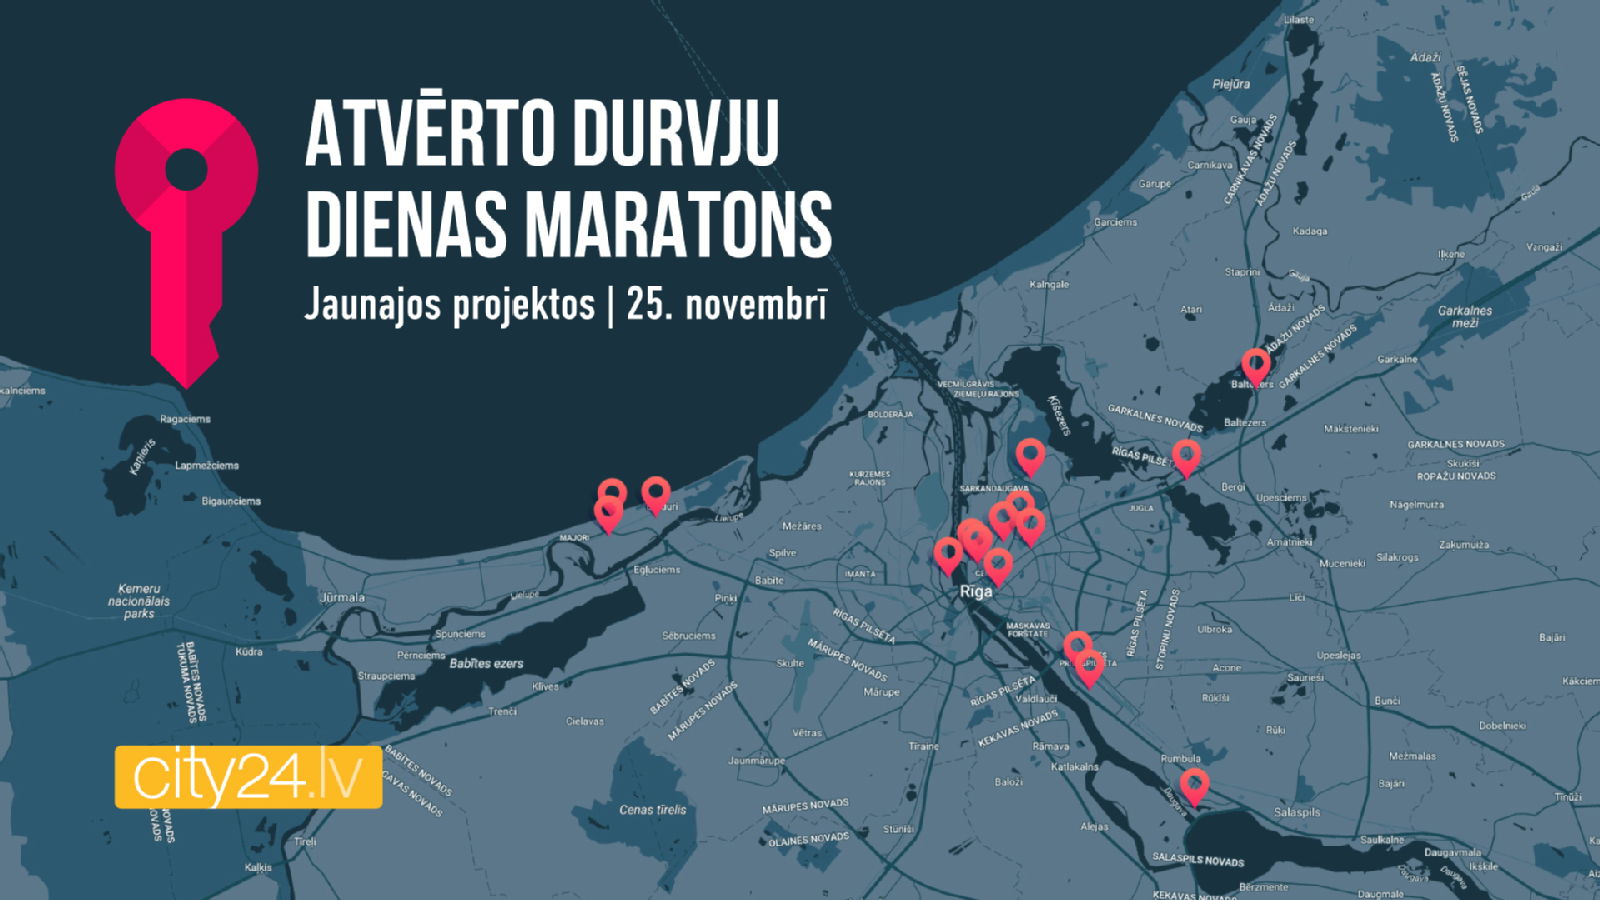 Pirmoreiz Latvijā norisināsies Atvērto durvju dienas maratons jaunajos projektos - Nekustamo īpašumu ziņas - City24.lv nekustamo īpašumu sludinājumu portāls